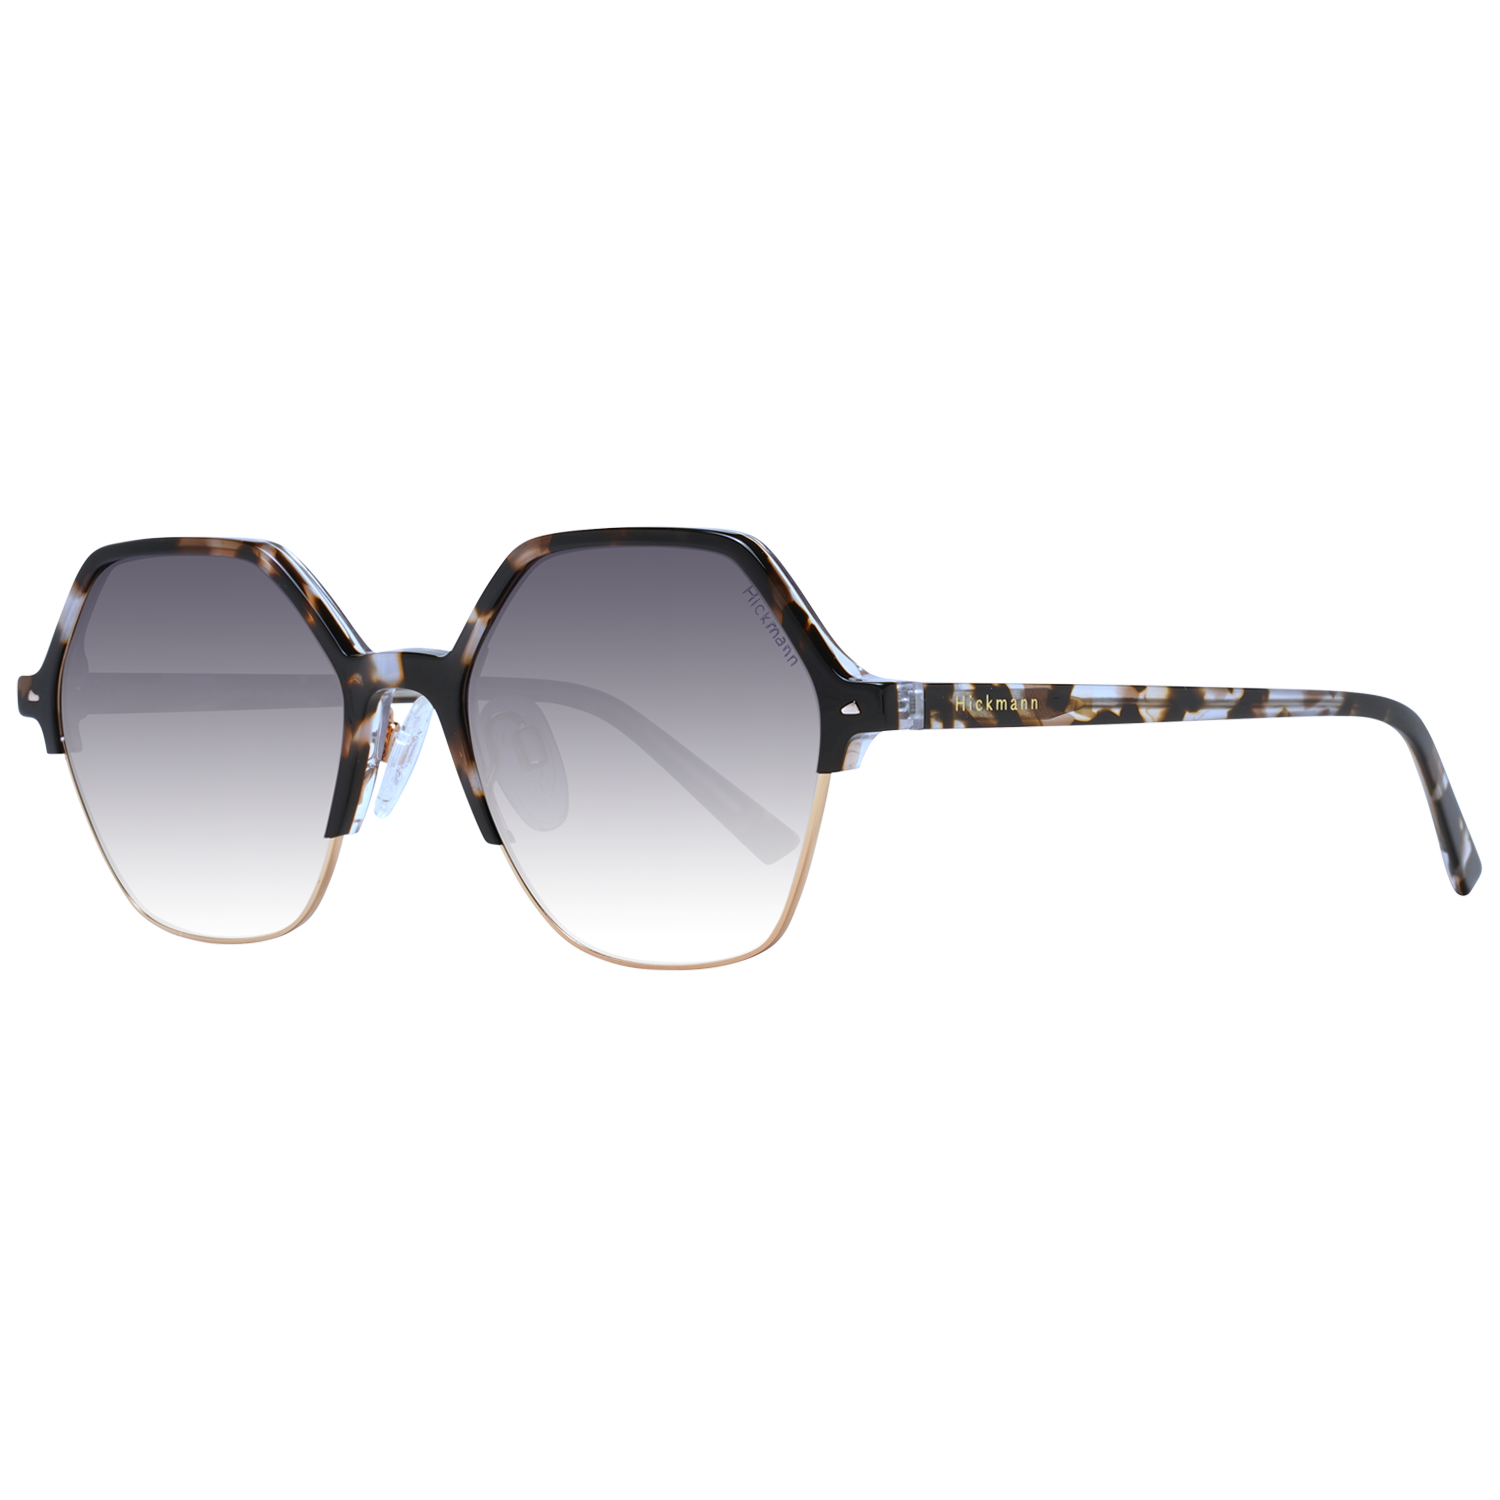 Dámské sluneční brýle Ana Hickmann HI9167 G21 54